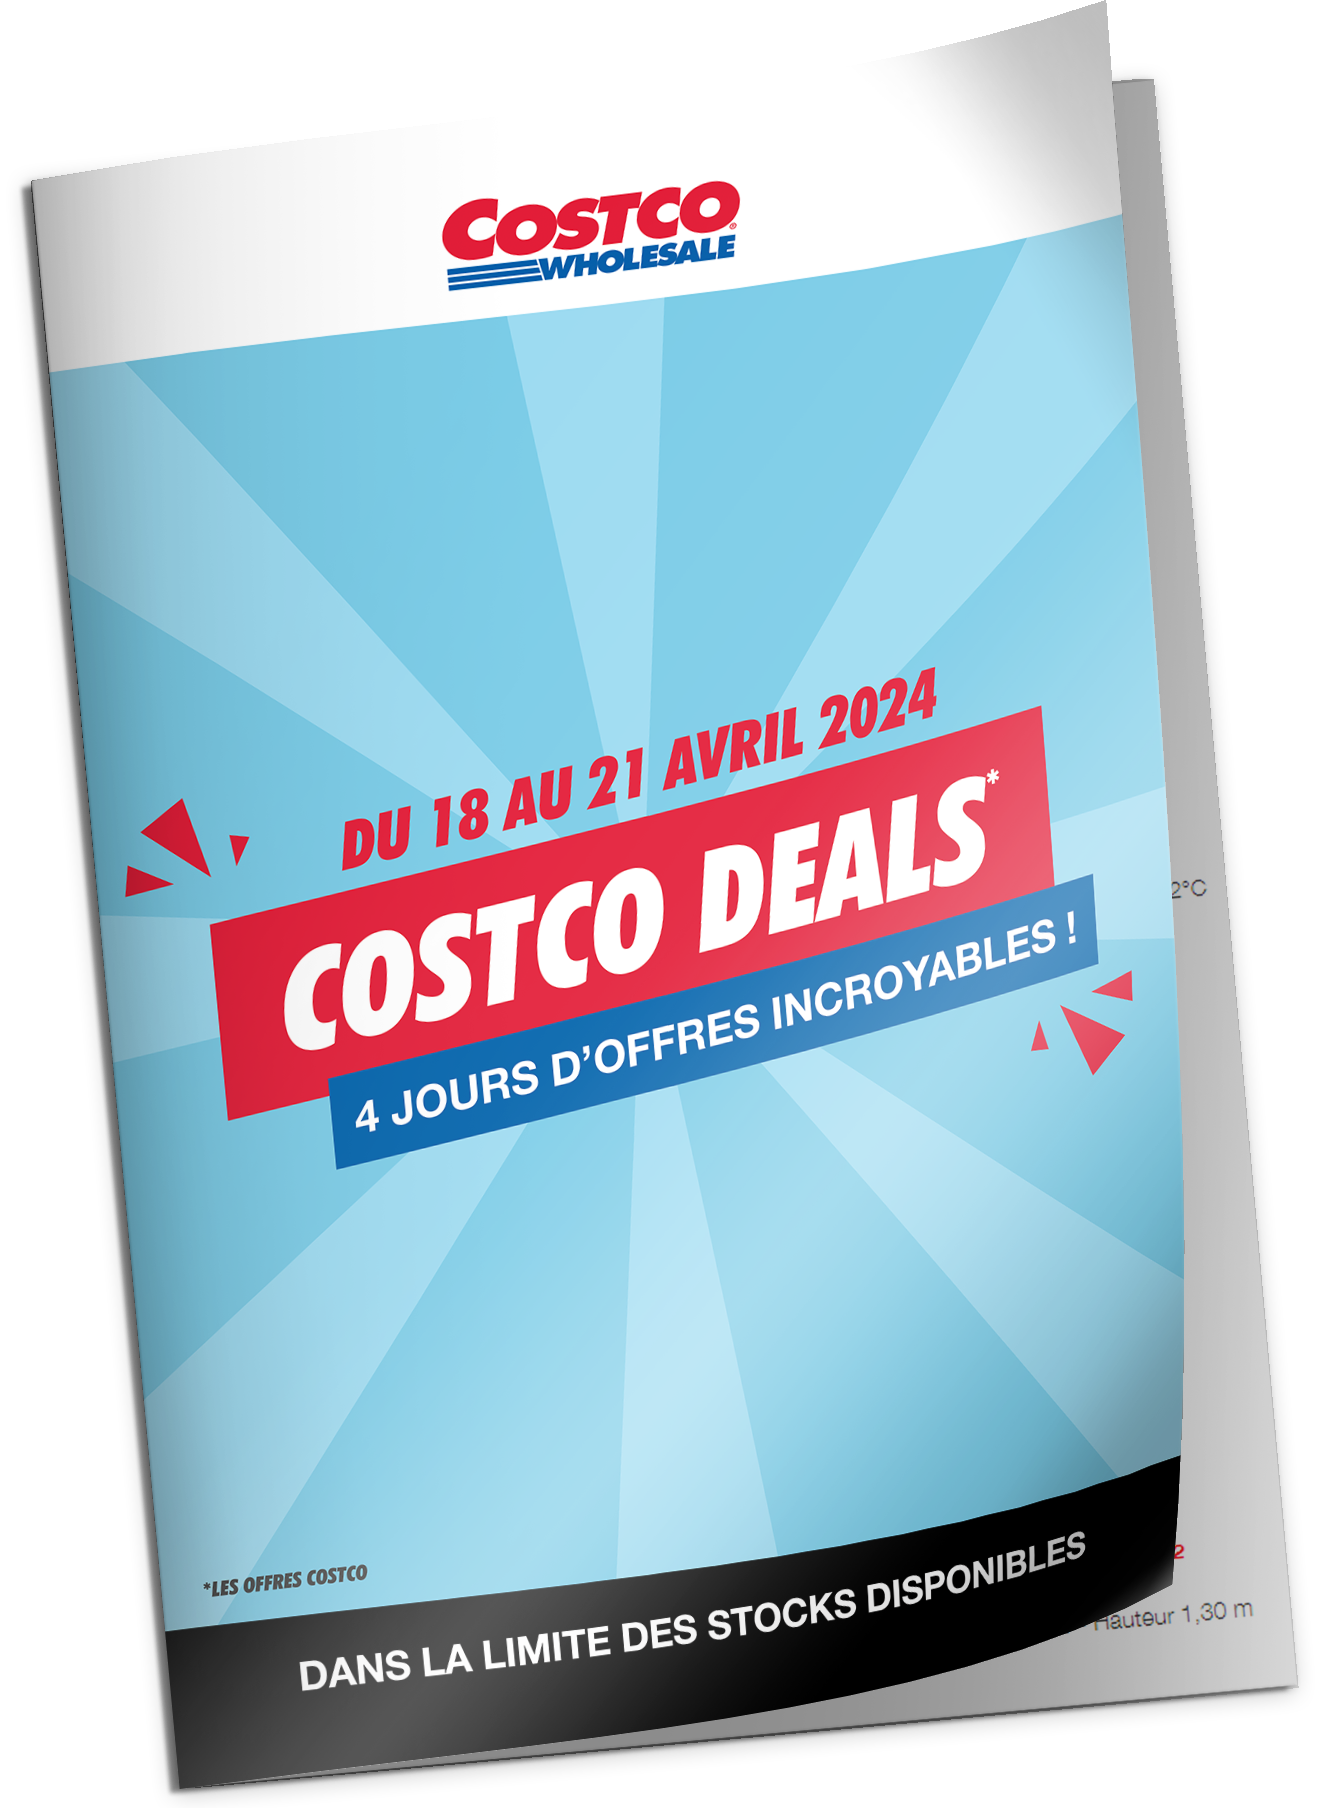 Costco Deals